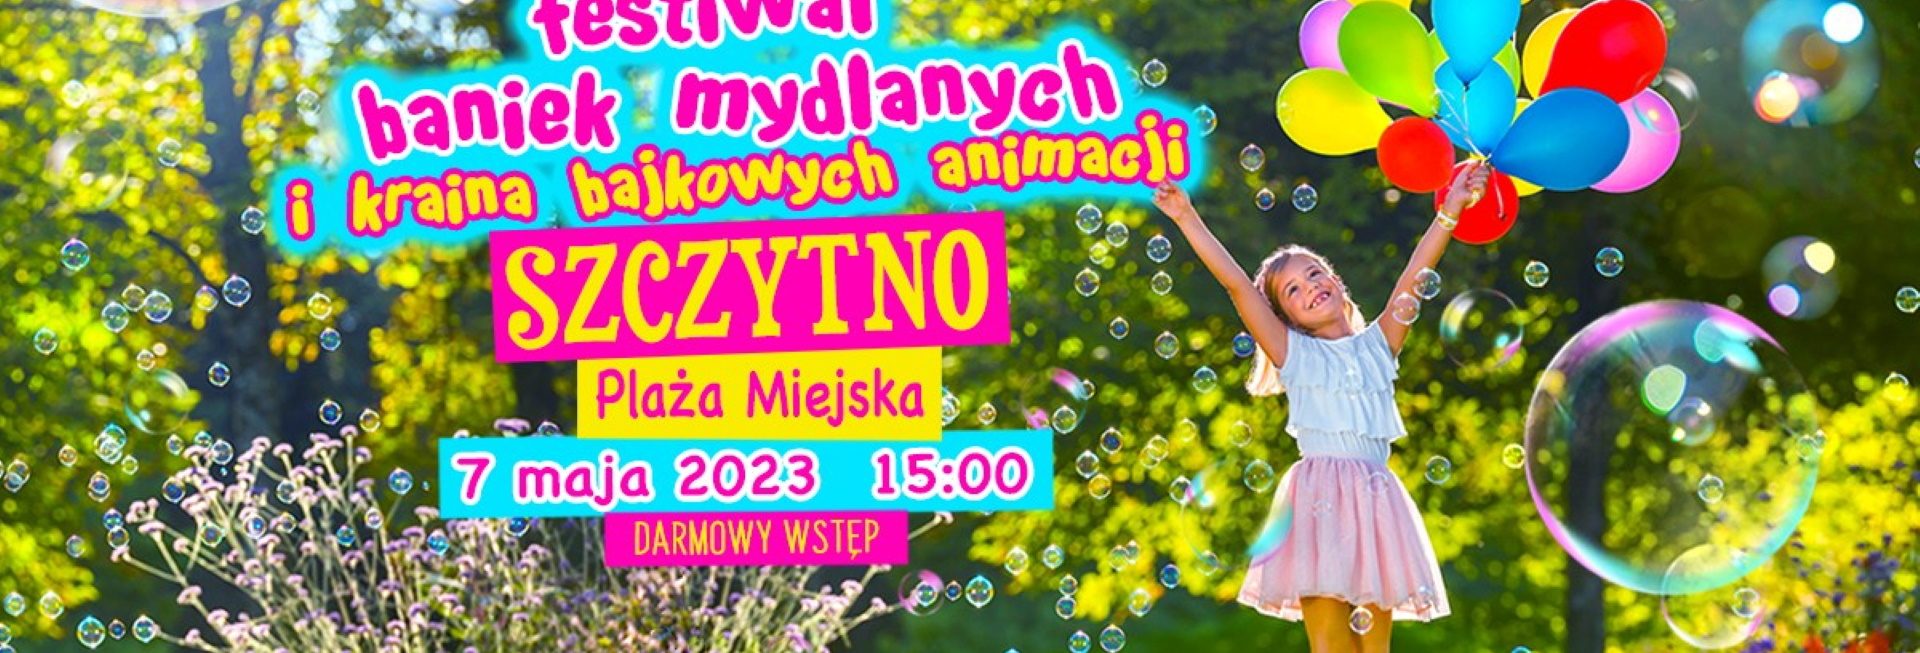 Plakat zapraszający w niedzielę 7 maja 2023 r. do Szczytna na Festiwal Baniek Mydlanych i do Krainy Bajkowych Animacji w Szczytnie! 2023.